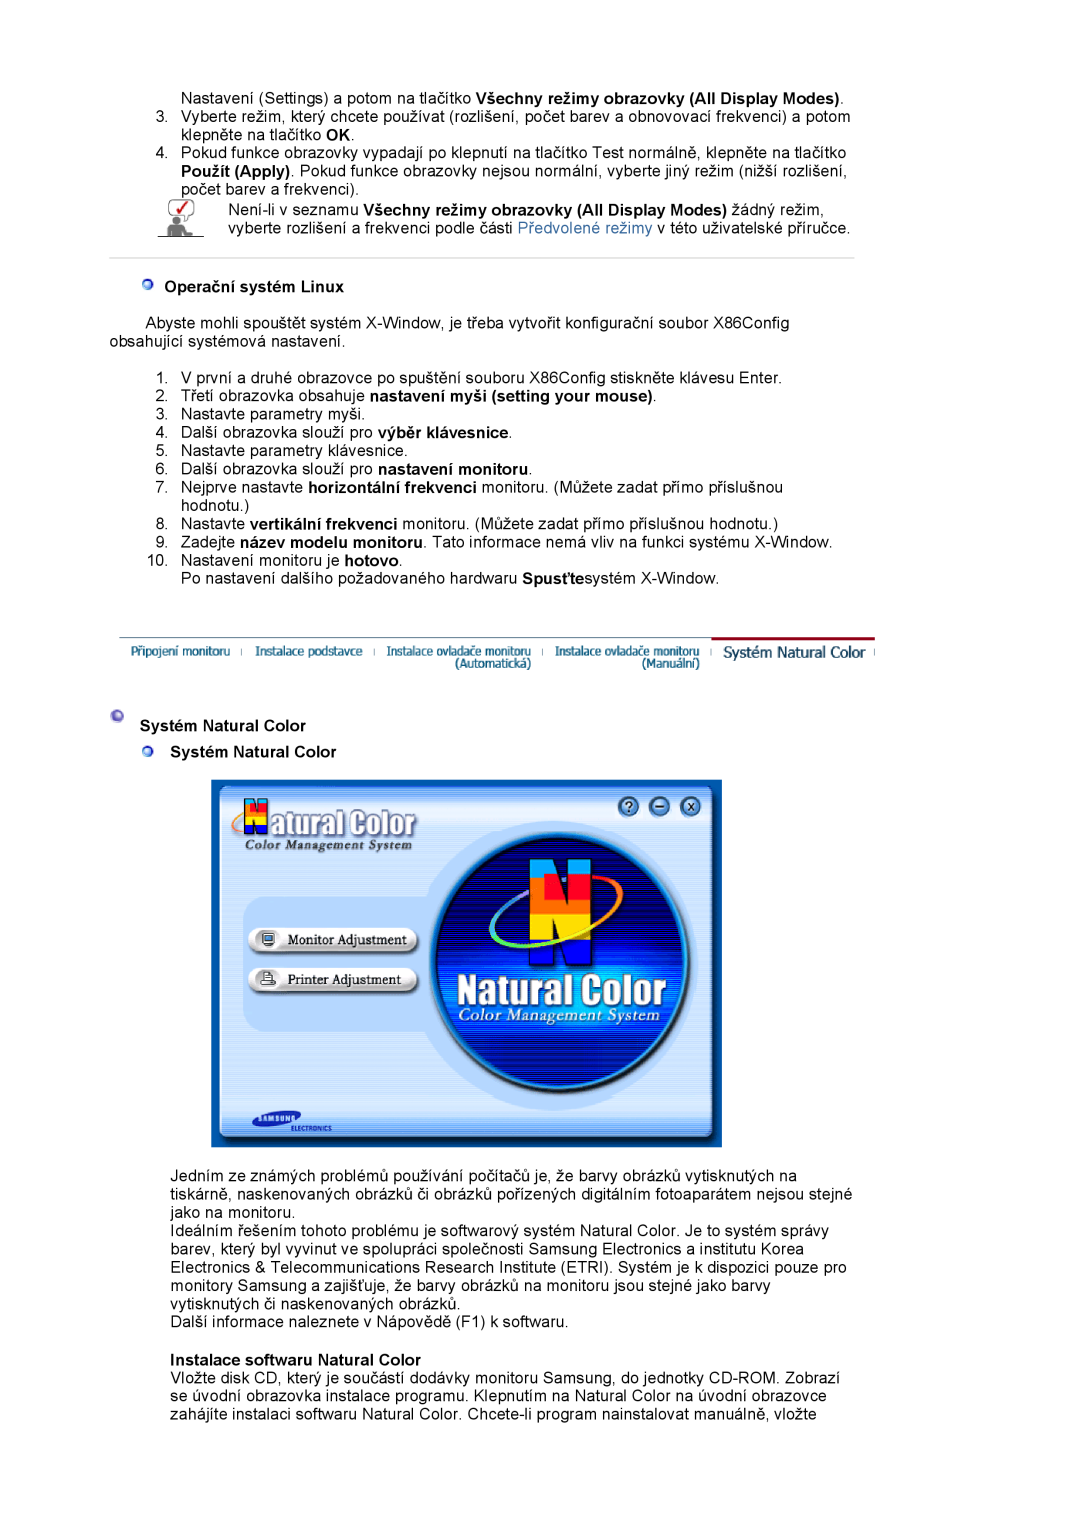 Samsung LS19MJSTS7/EDC manual Operaþní systém Linux, 2. TĜetí obrazovka obsahuje nastavení myši setting your mouse 